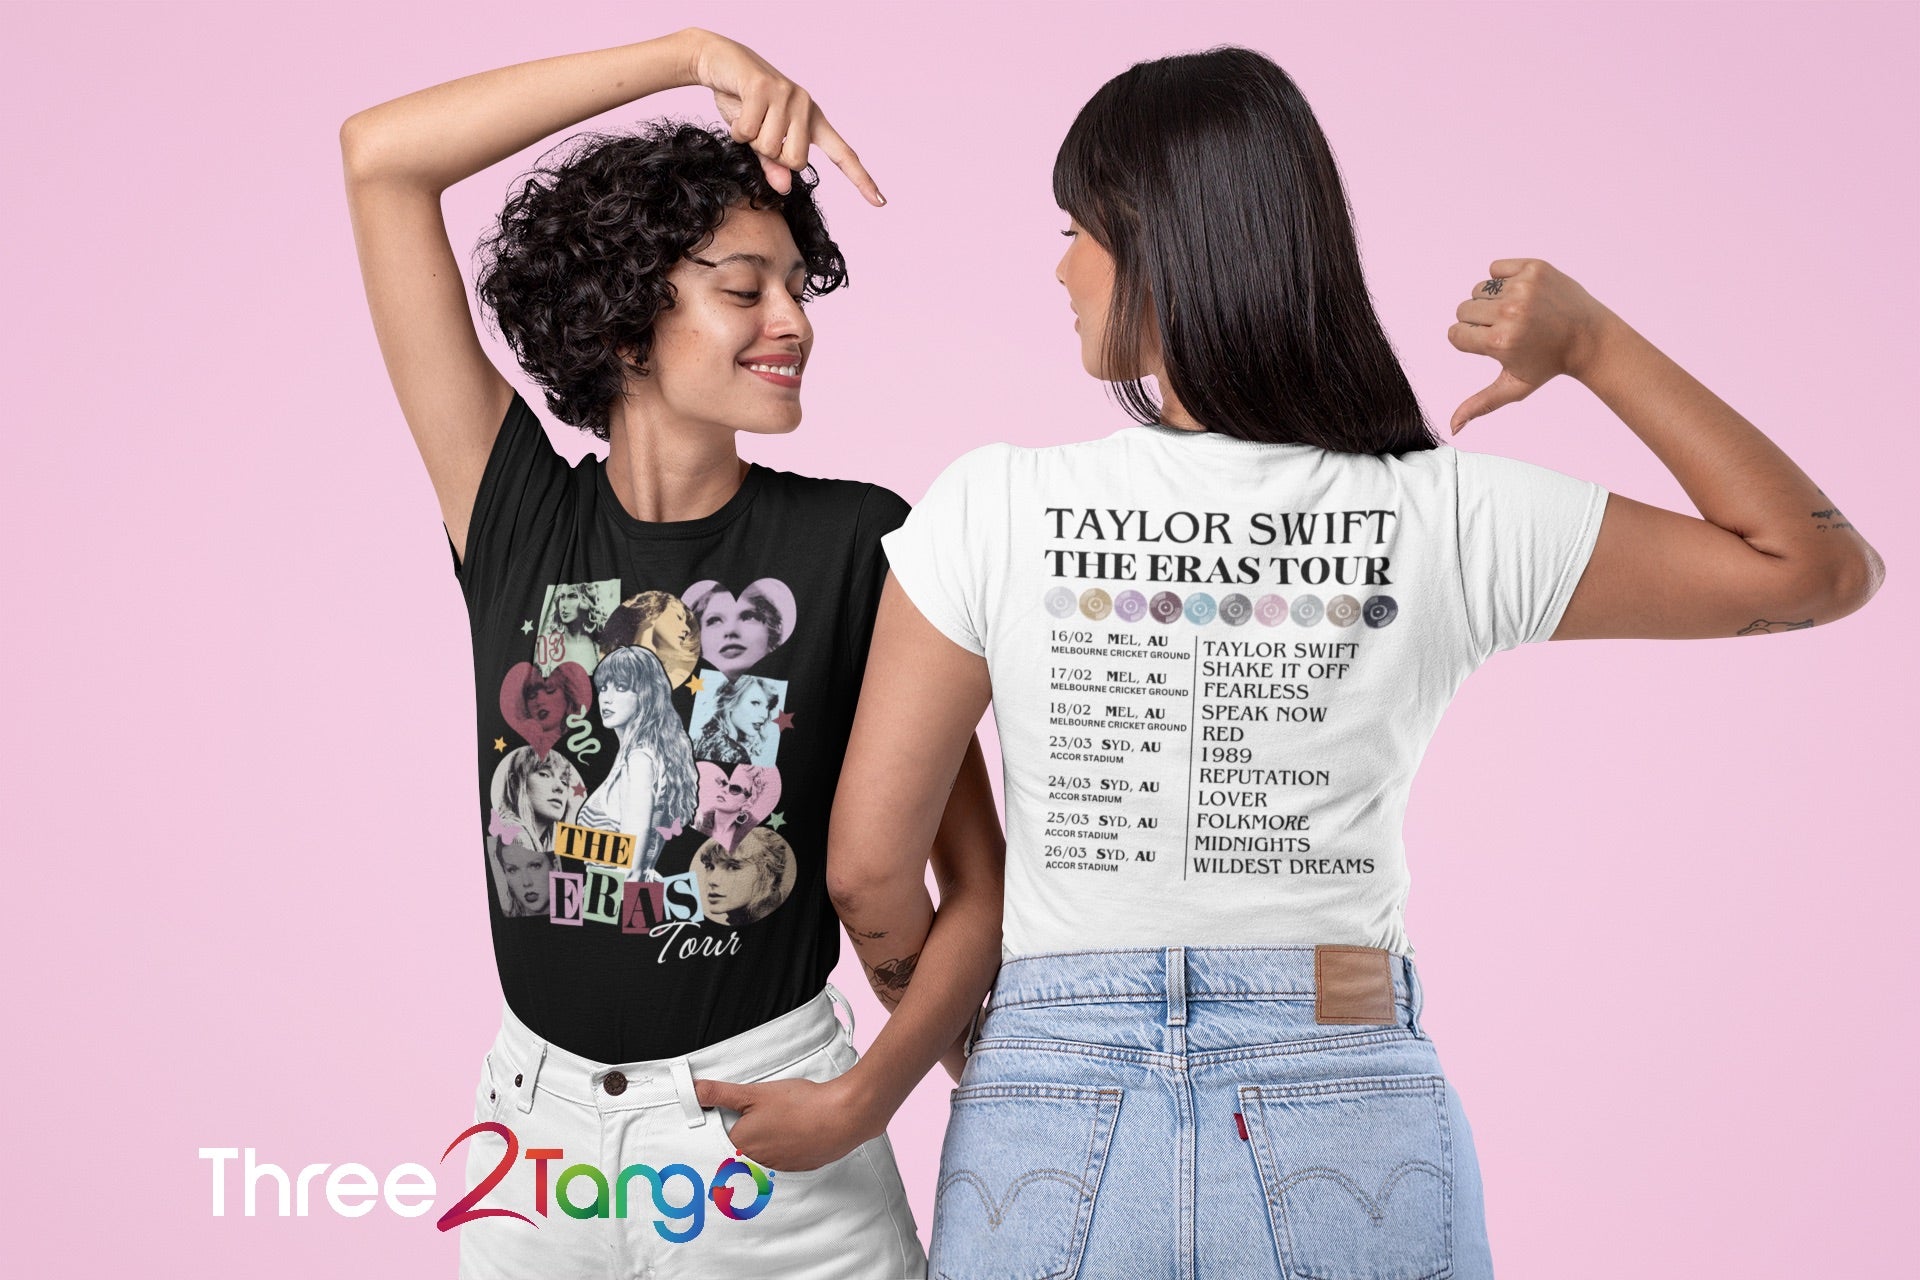 Taylor Swift - The Eras Tour Australia - Three2Tango Tee's